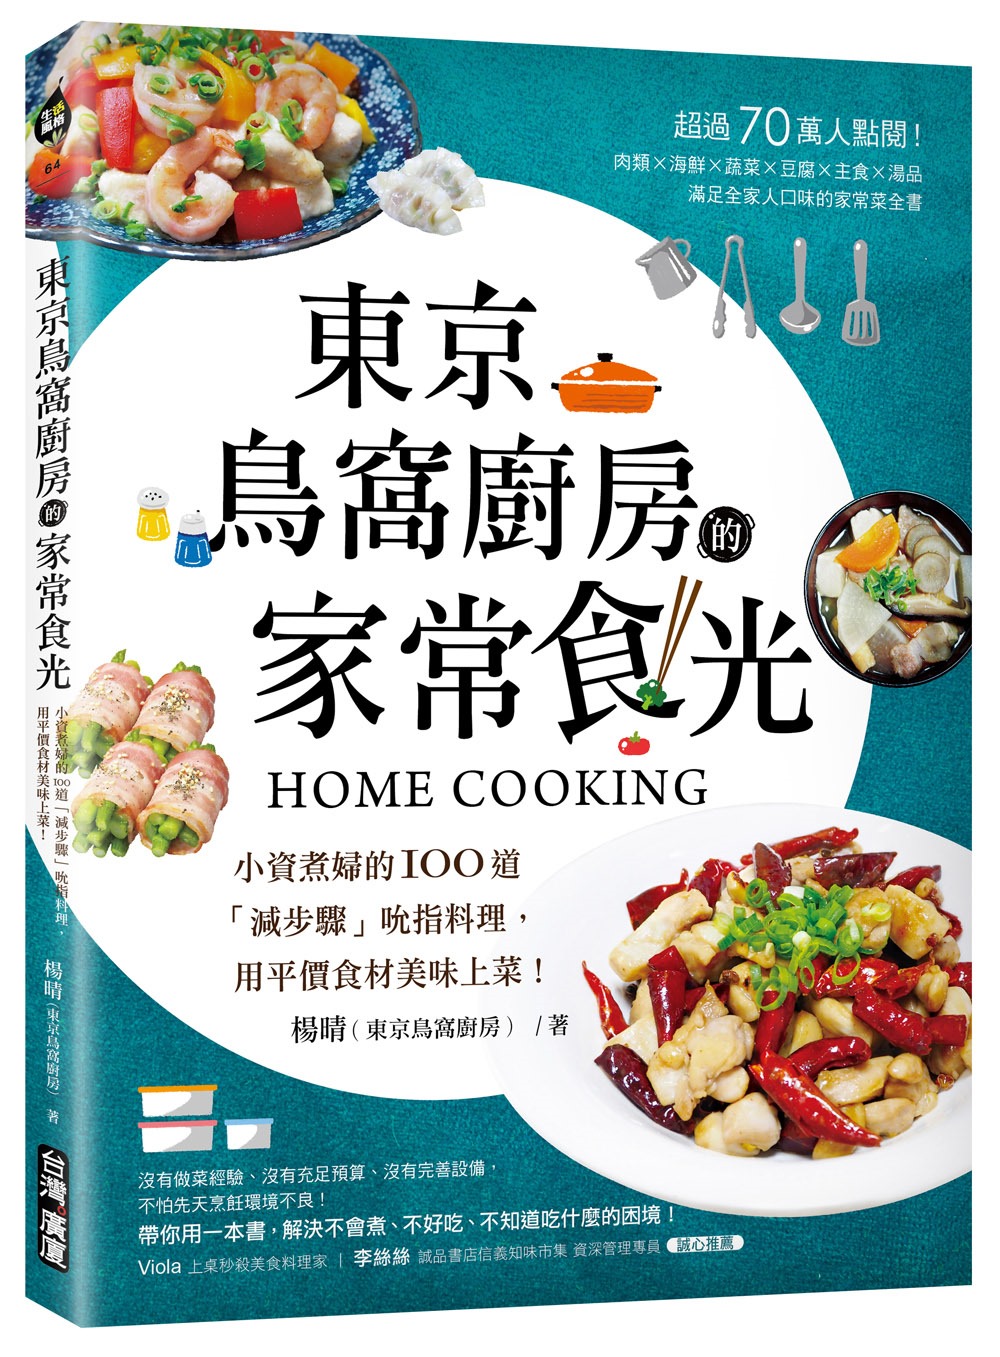 東京鳥窩廚房的家常食光：小資煮婦的100道「減步驟」吮指料理...